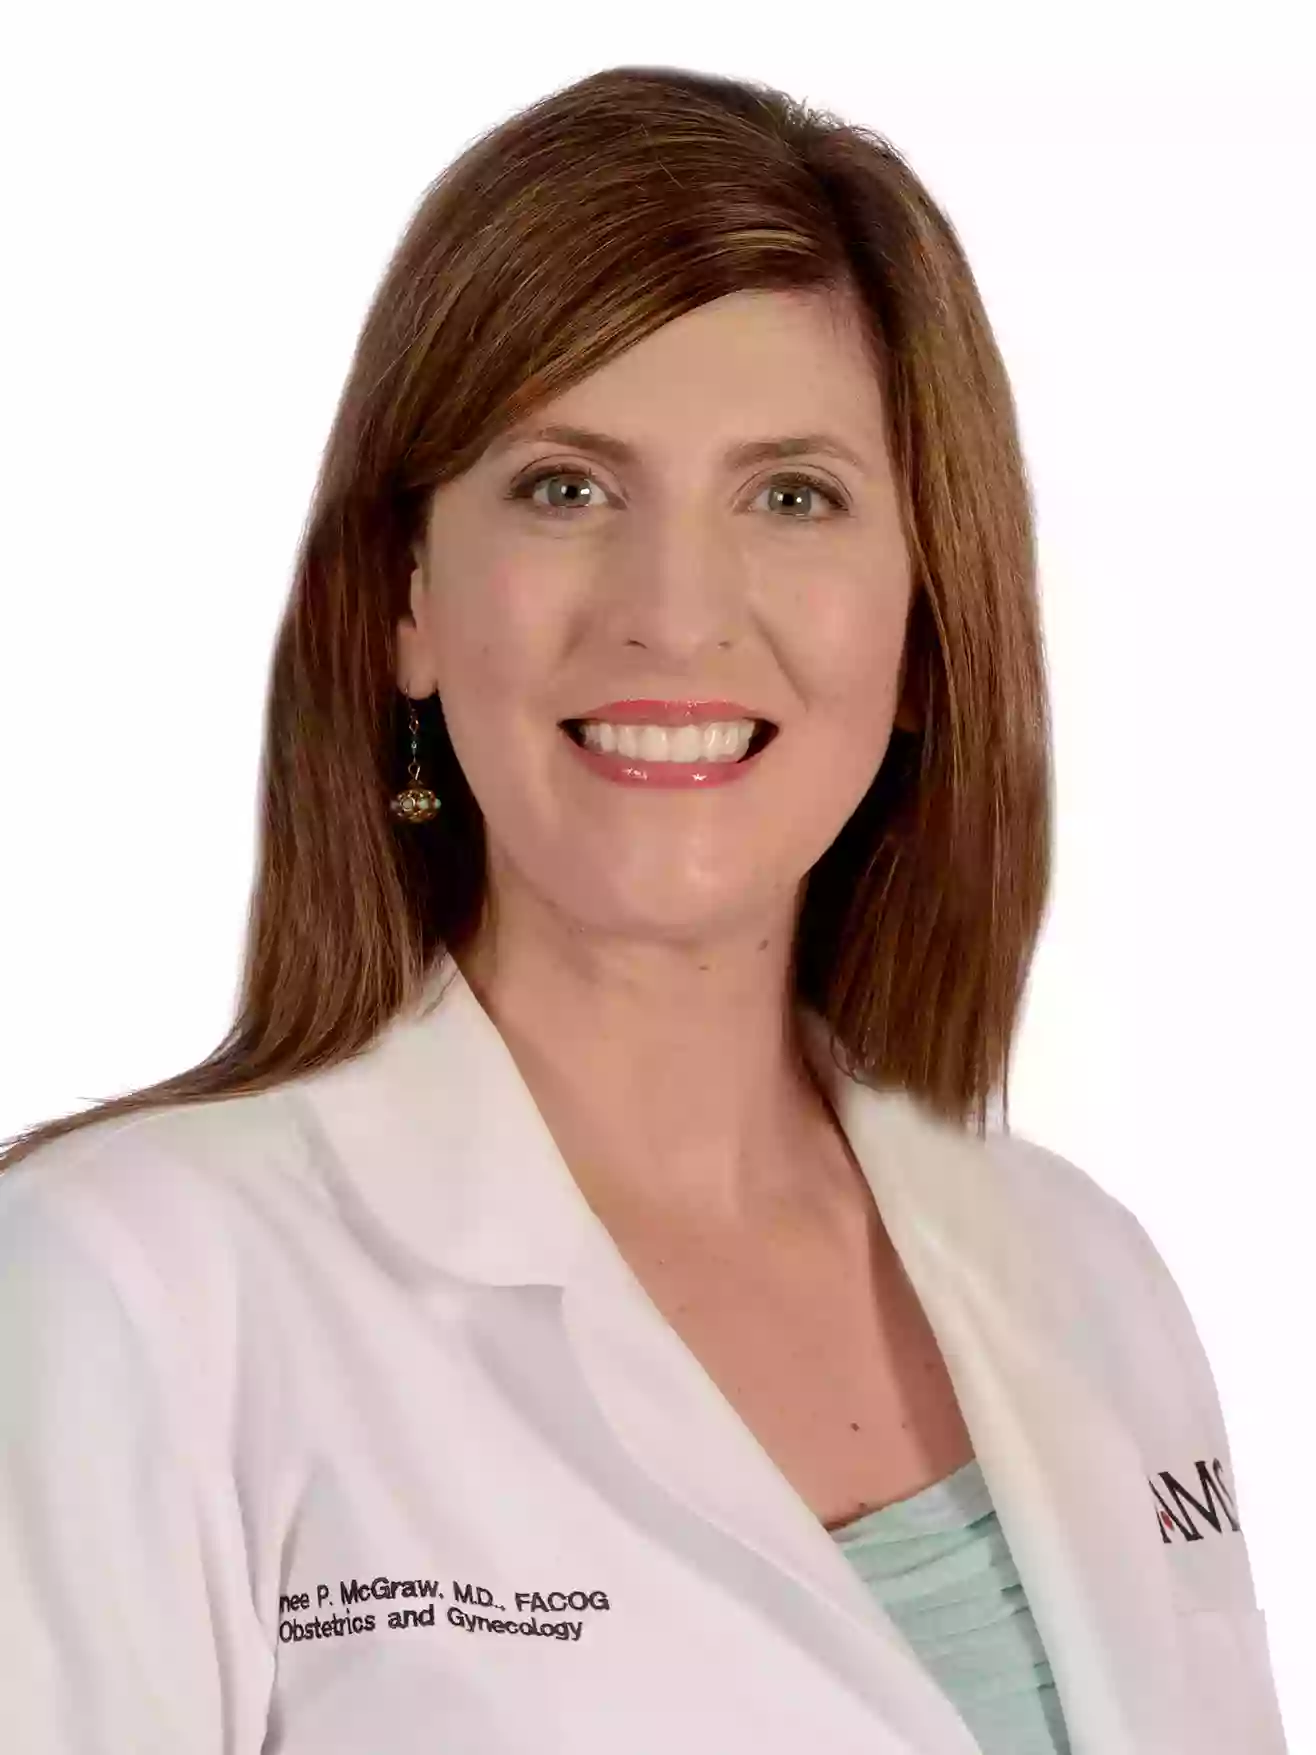 UAMS Health - Renee P. McGraw, M.D.